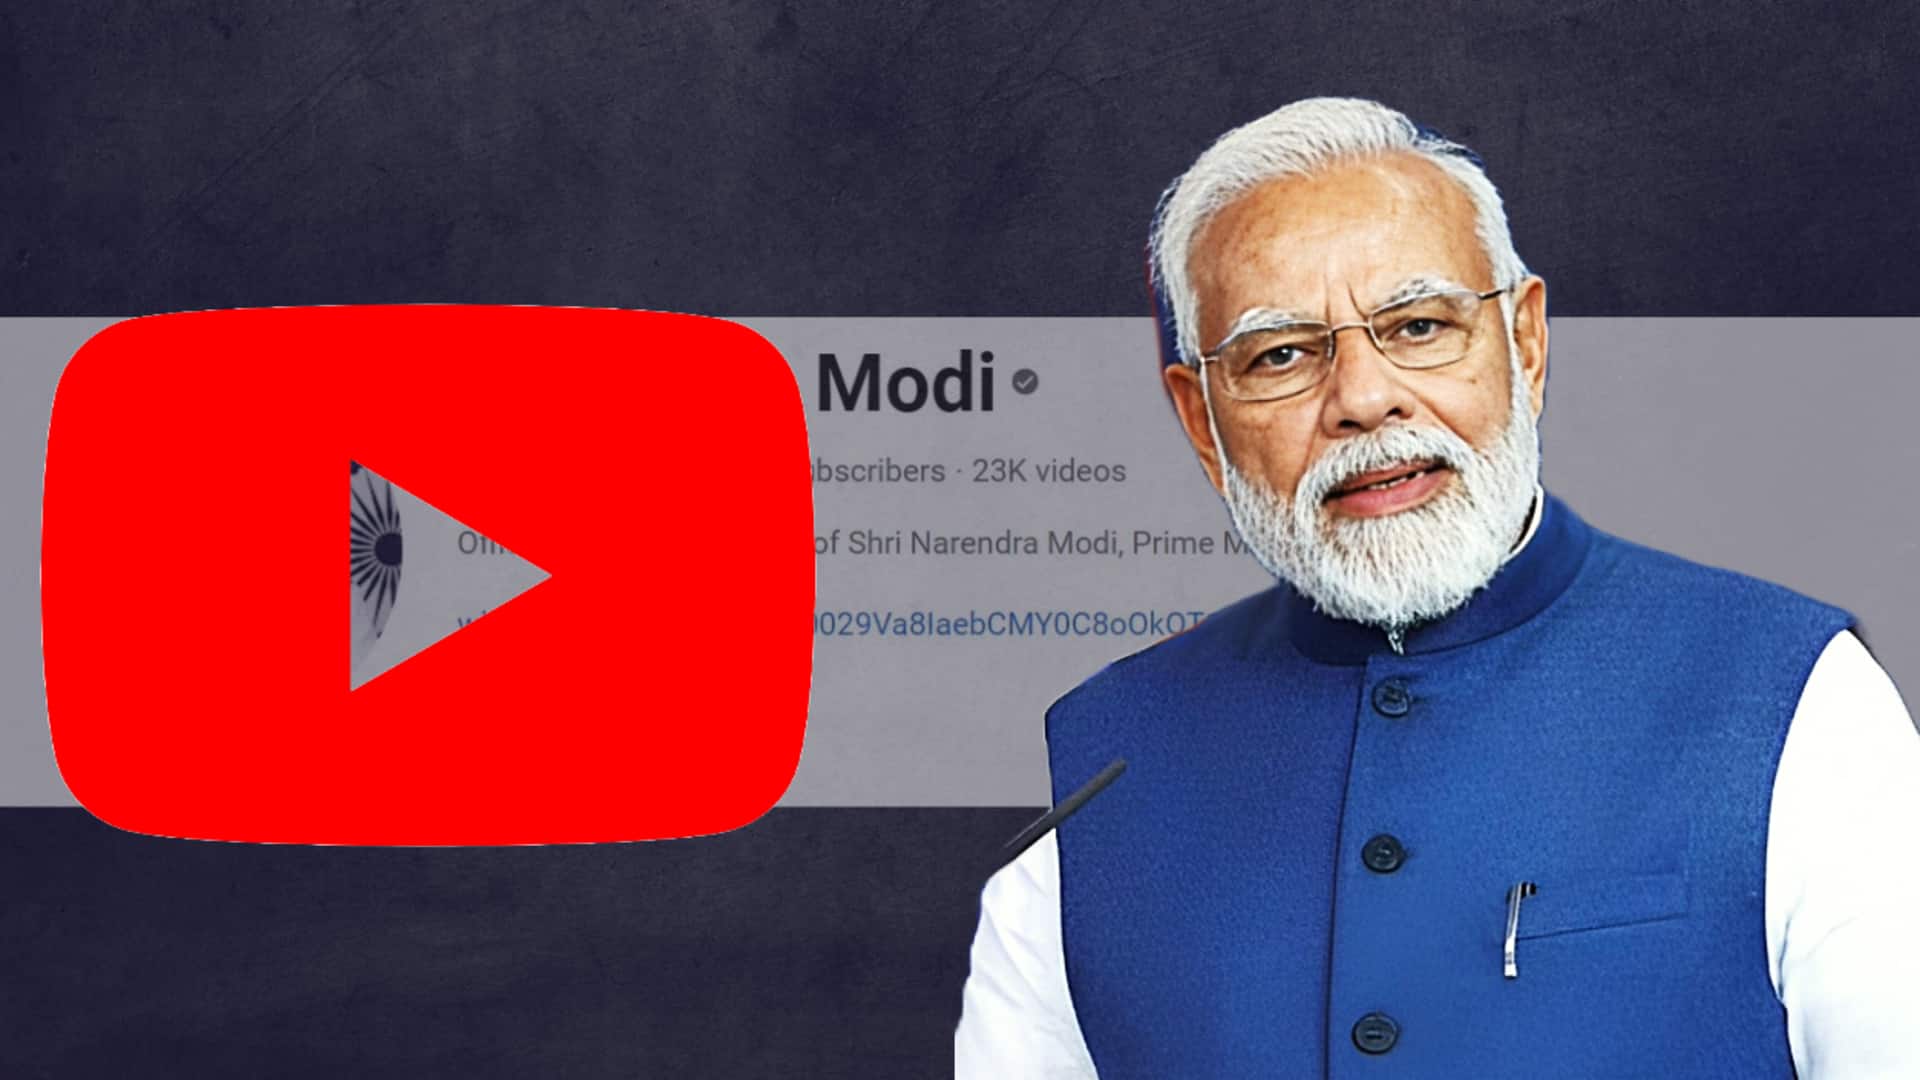 प्रधानमंत्री नरेंद्र मोदी के यूट्यूब चैनल पर सब्सक्राइब की संख्या 2 करोड़ पार, रचा इतिहास